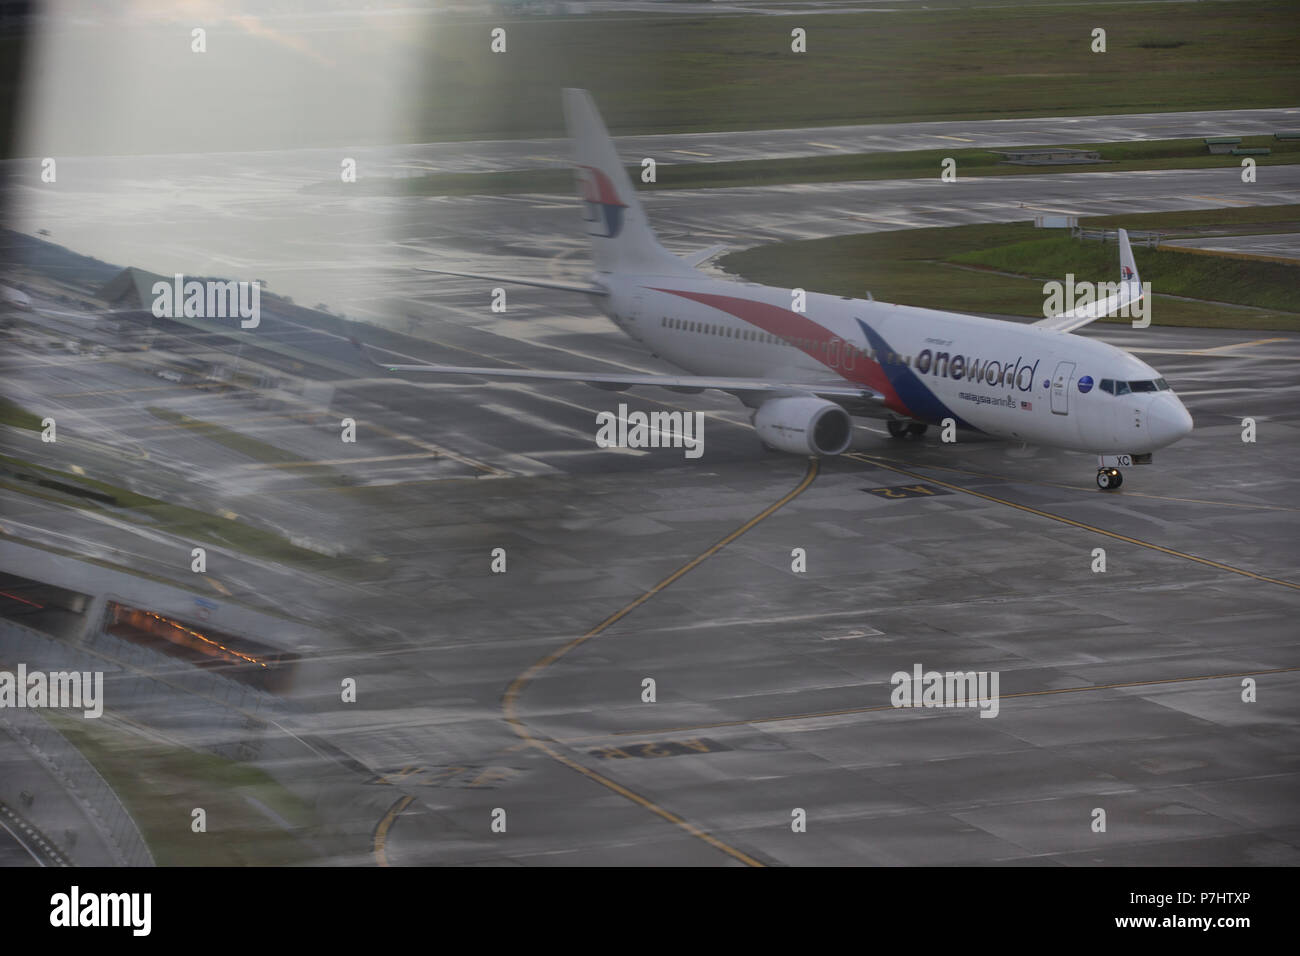 La Malaysian Airlines Boeing 737 taxis pour le terminal après l'atterrissage à l'Aéroport International de Kuala Lumpur. Banque D'Images